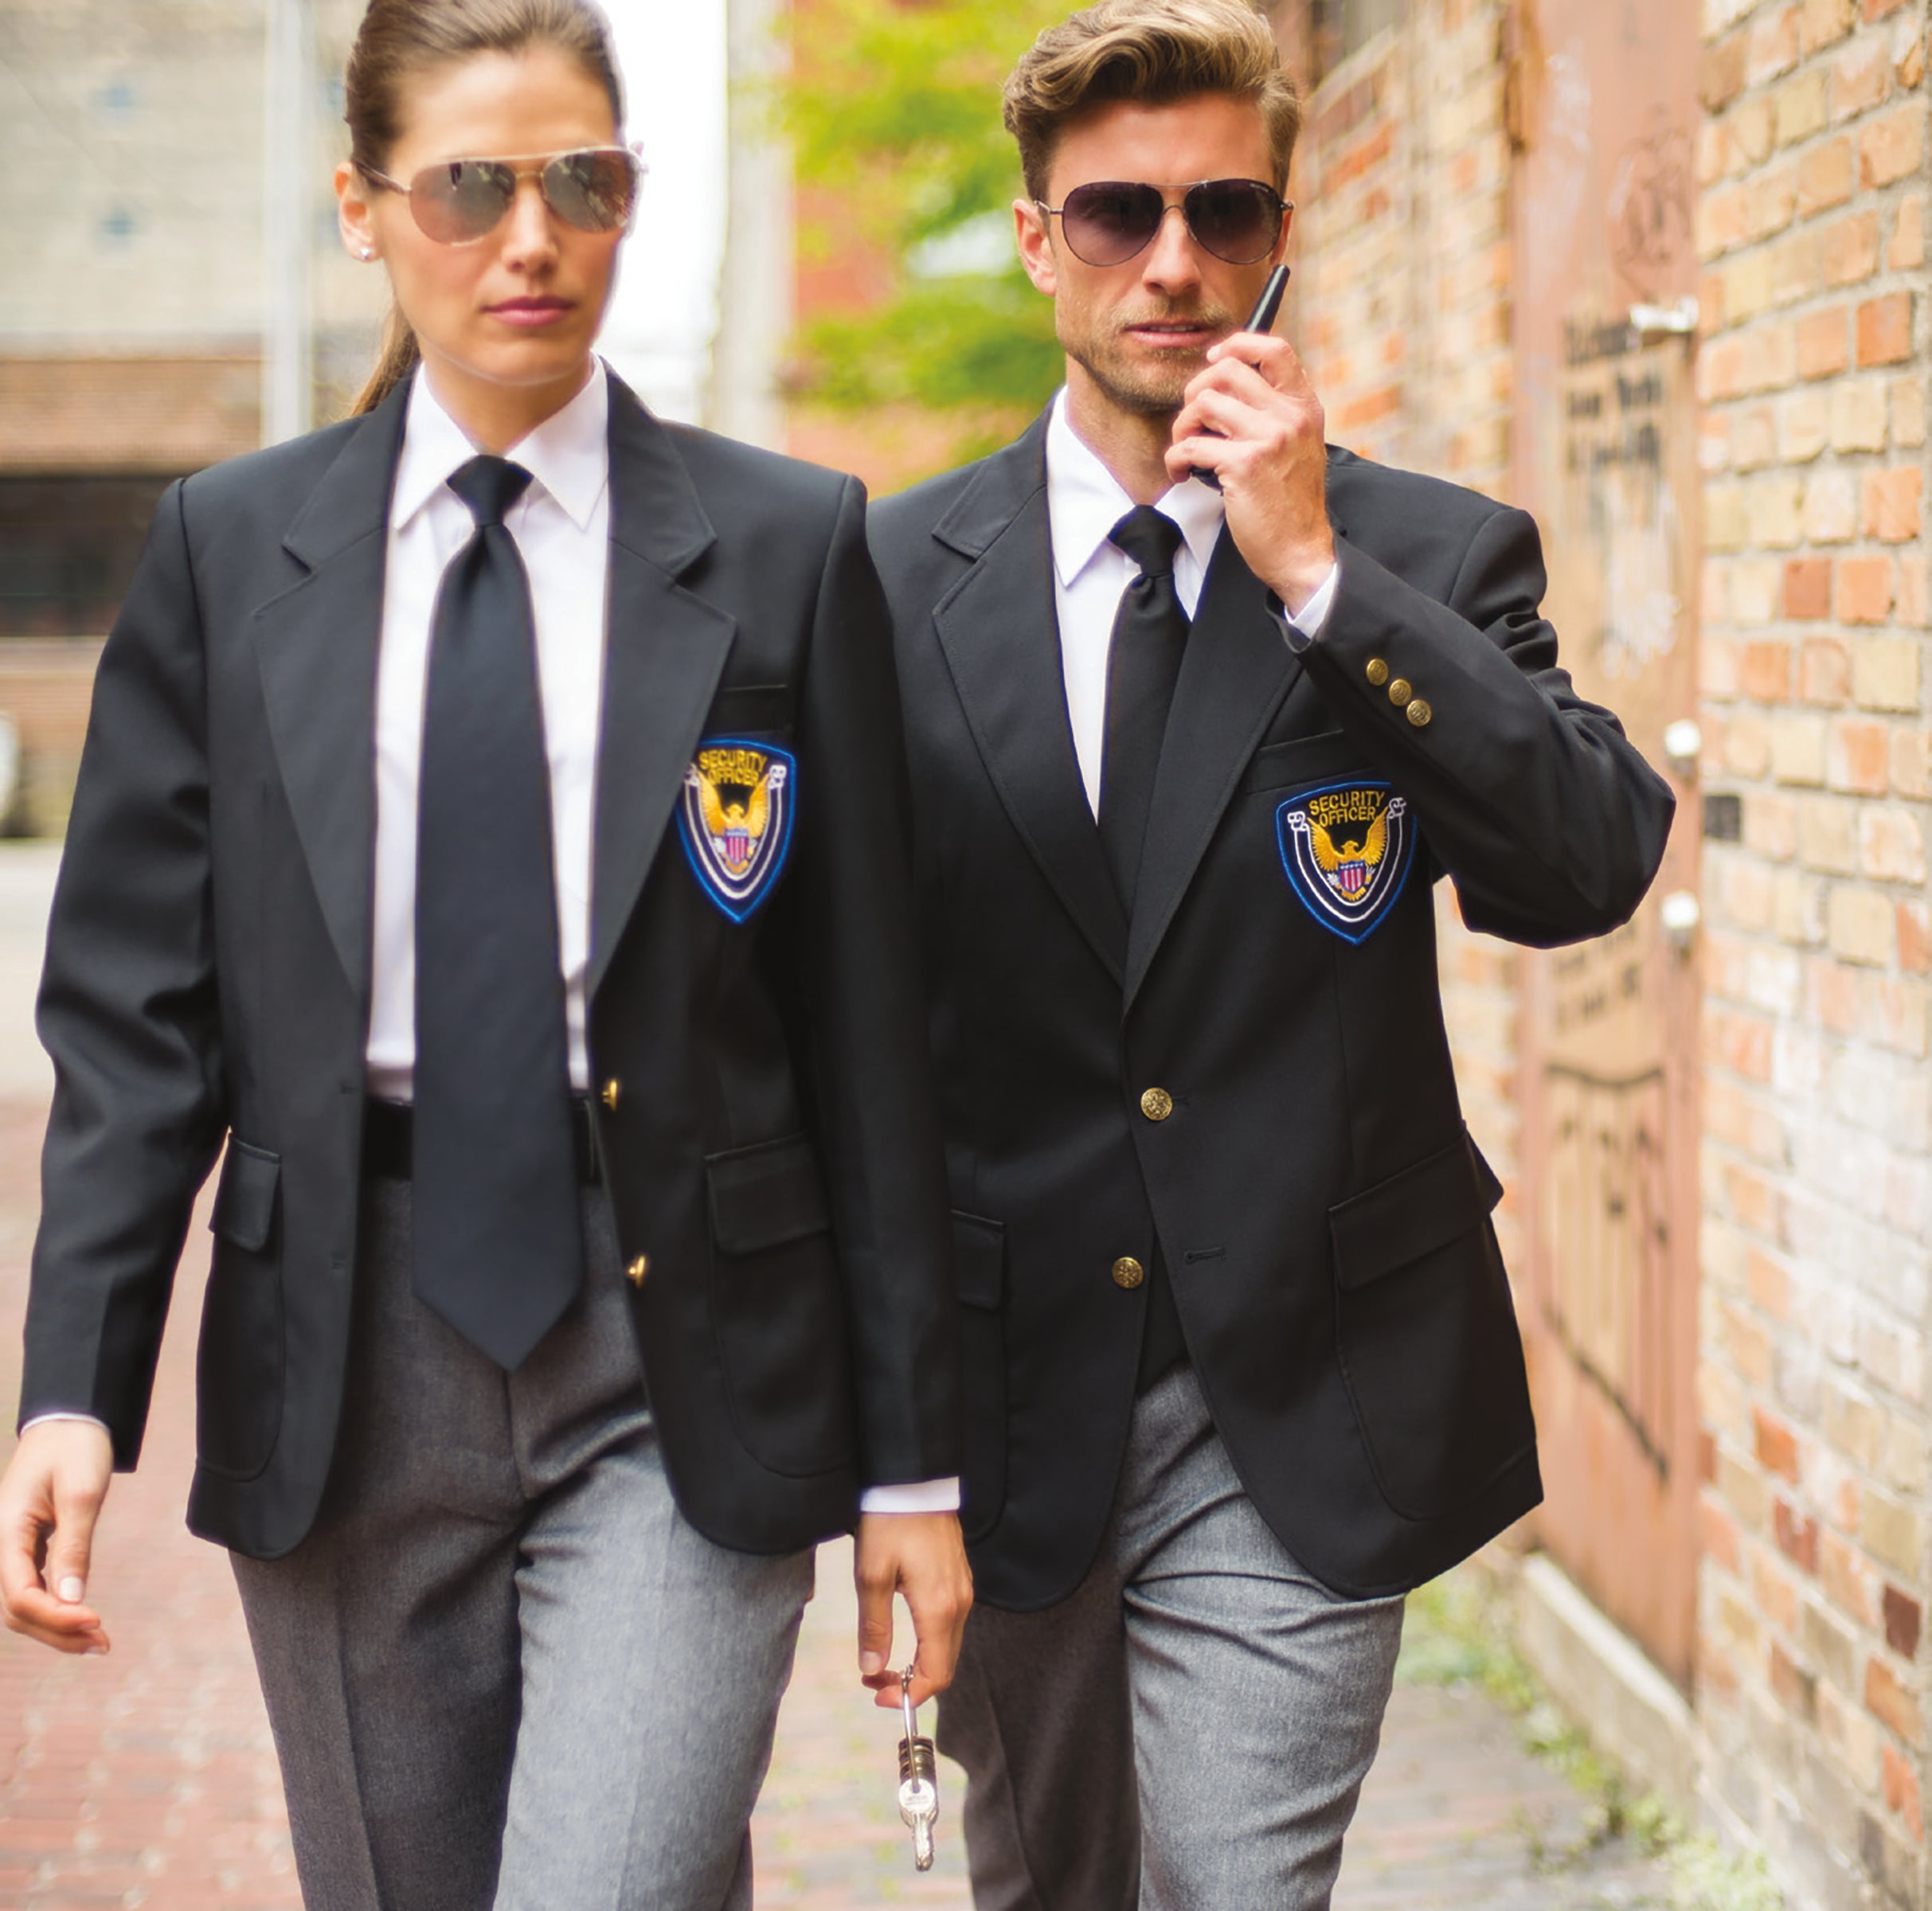 Men's Security Jackets, Suit Coats and Vests